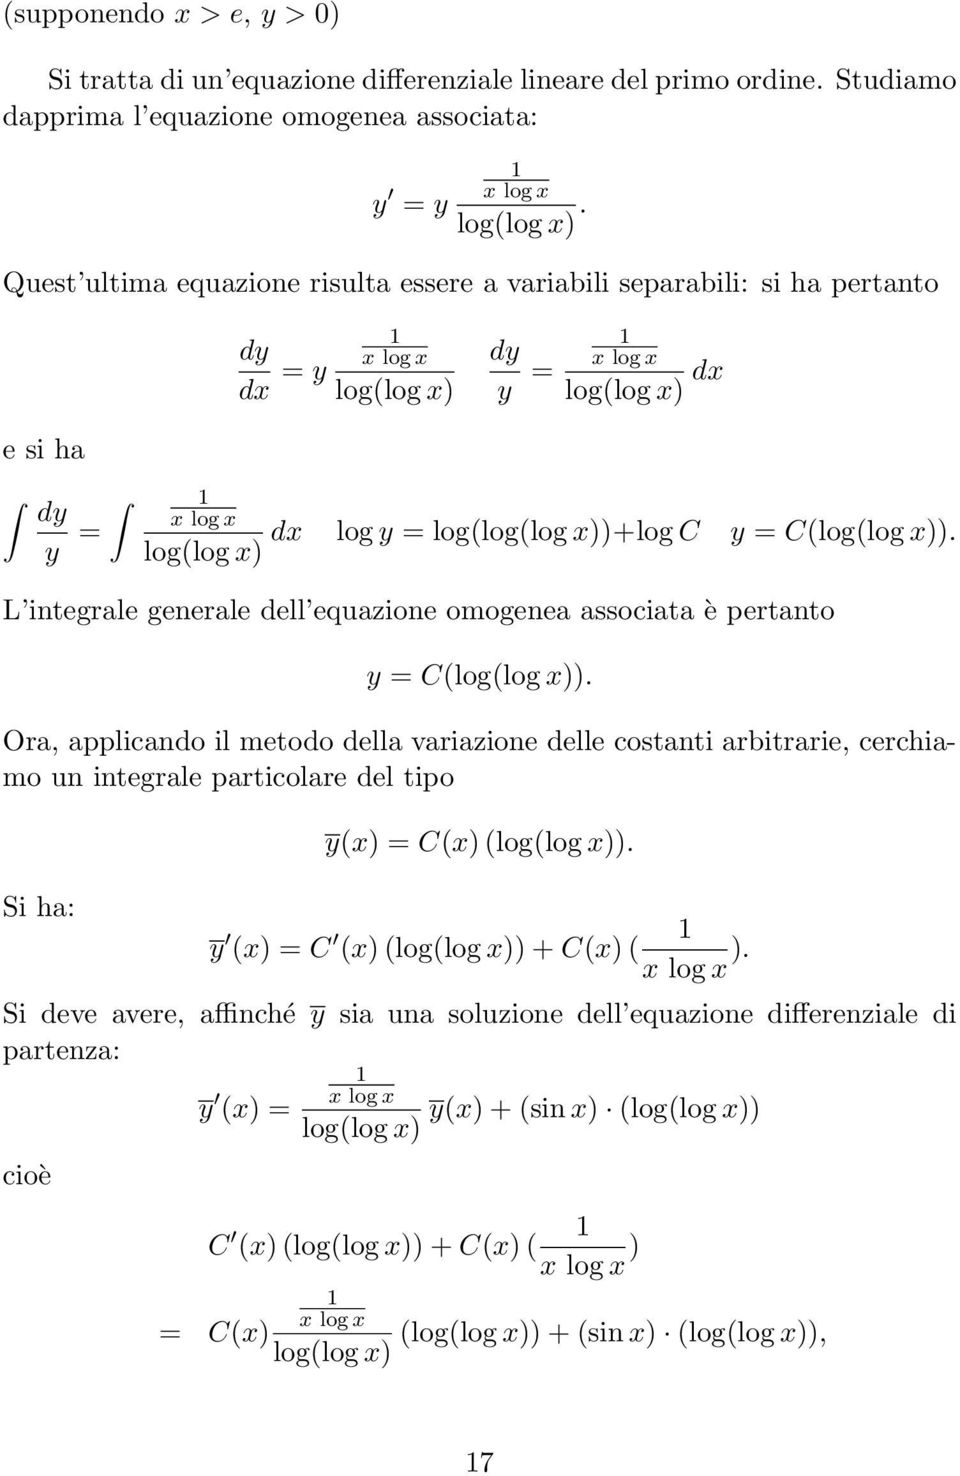 integrale generale dell equazione omogenea associata è pertanto y = C(log(log x)) Ora, applicando il metodo della variazione delle costanti arbitrarie, cerchiamo un integrale particolare del tipo Si